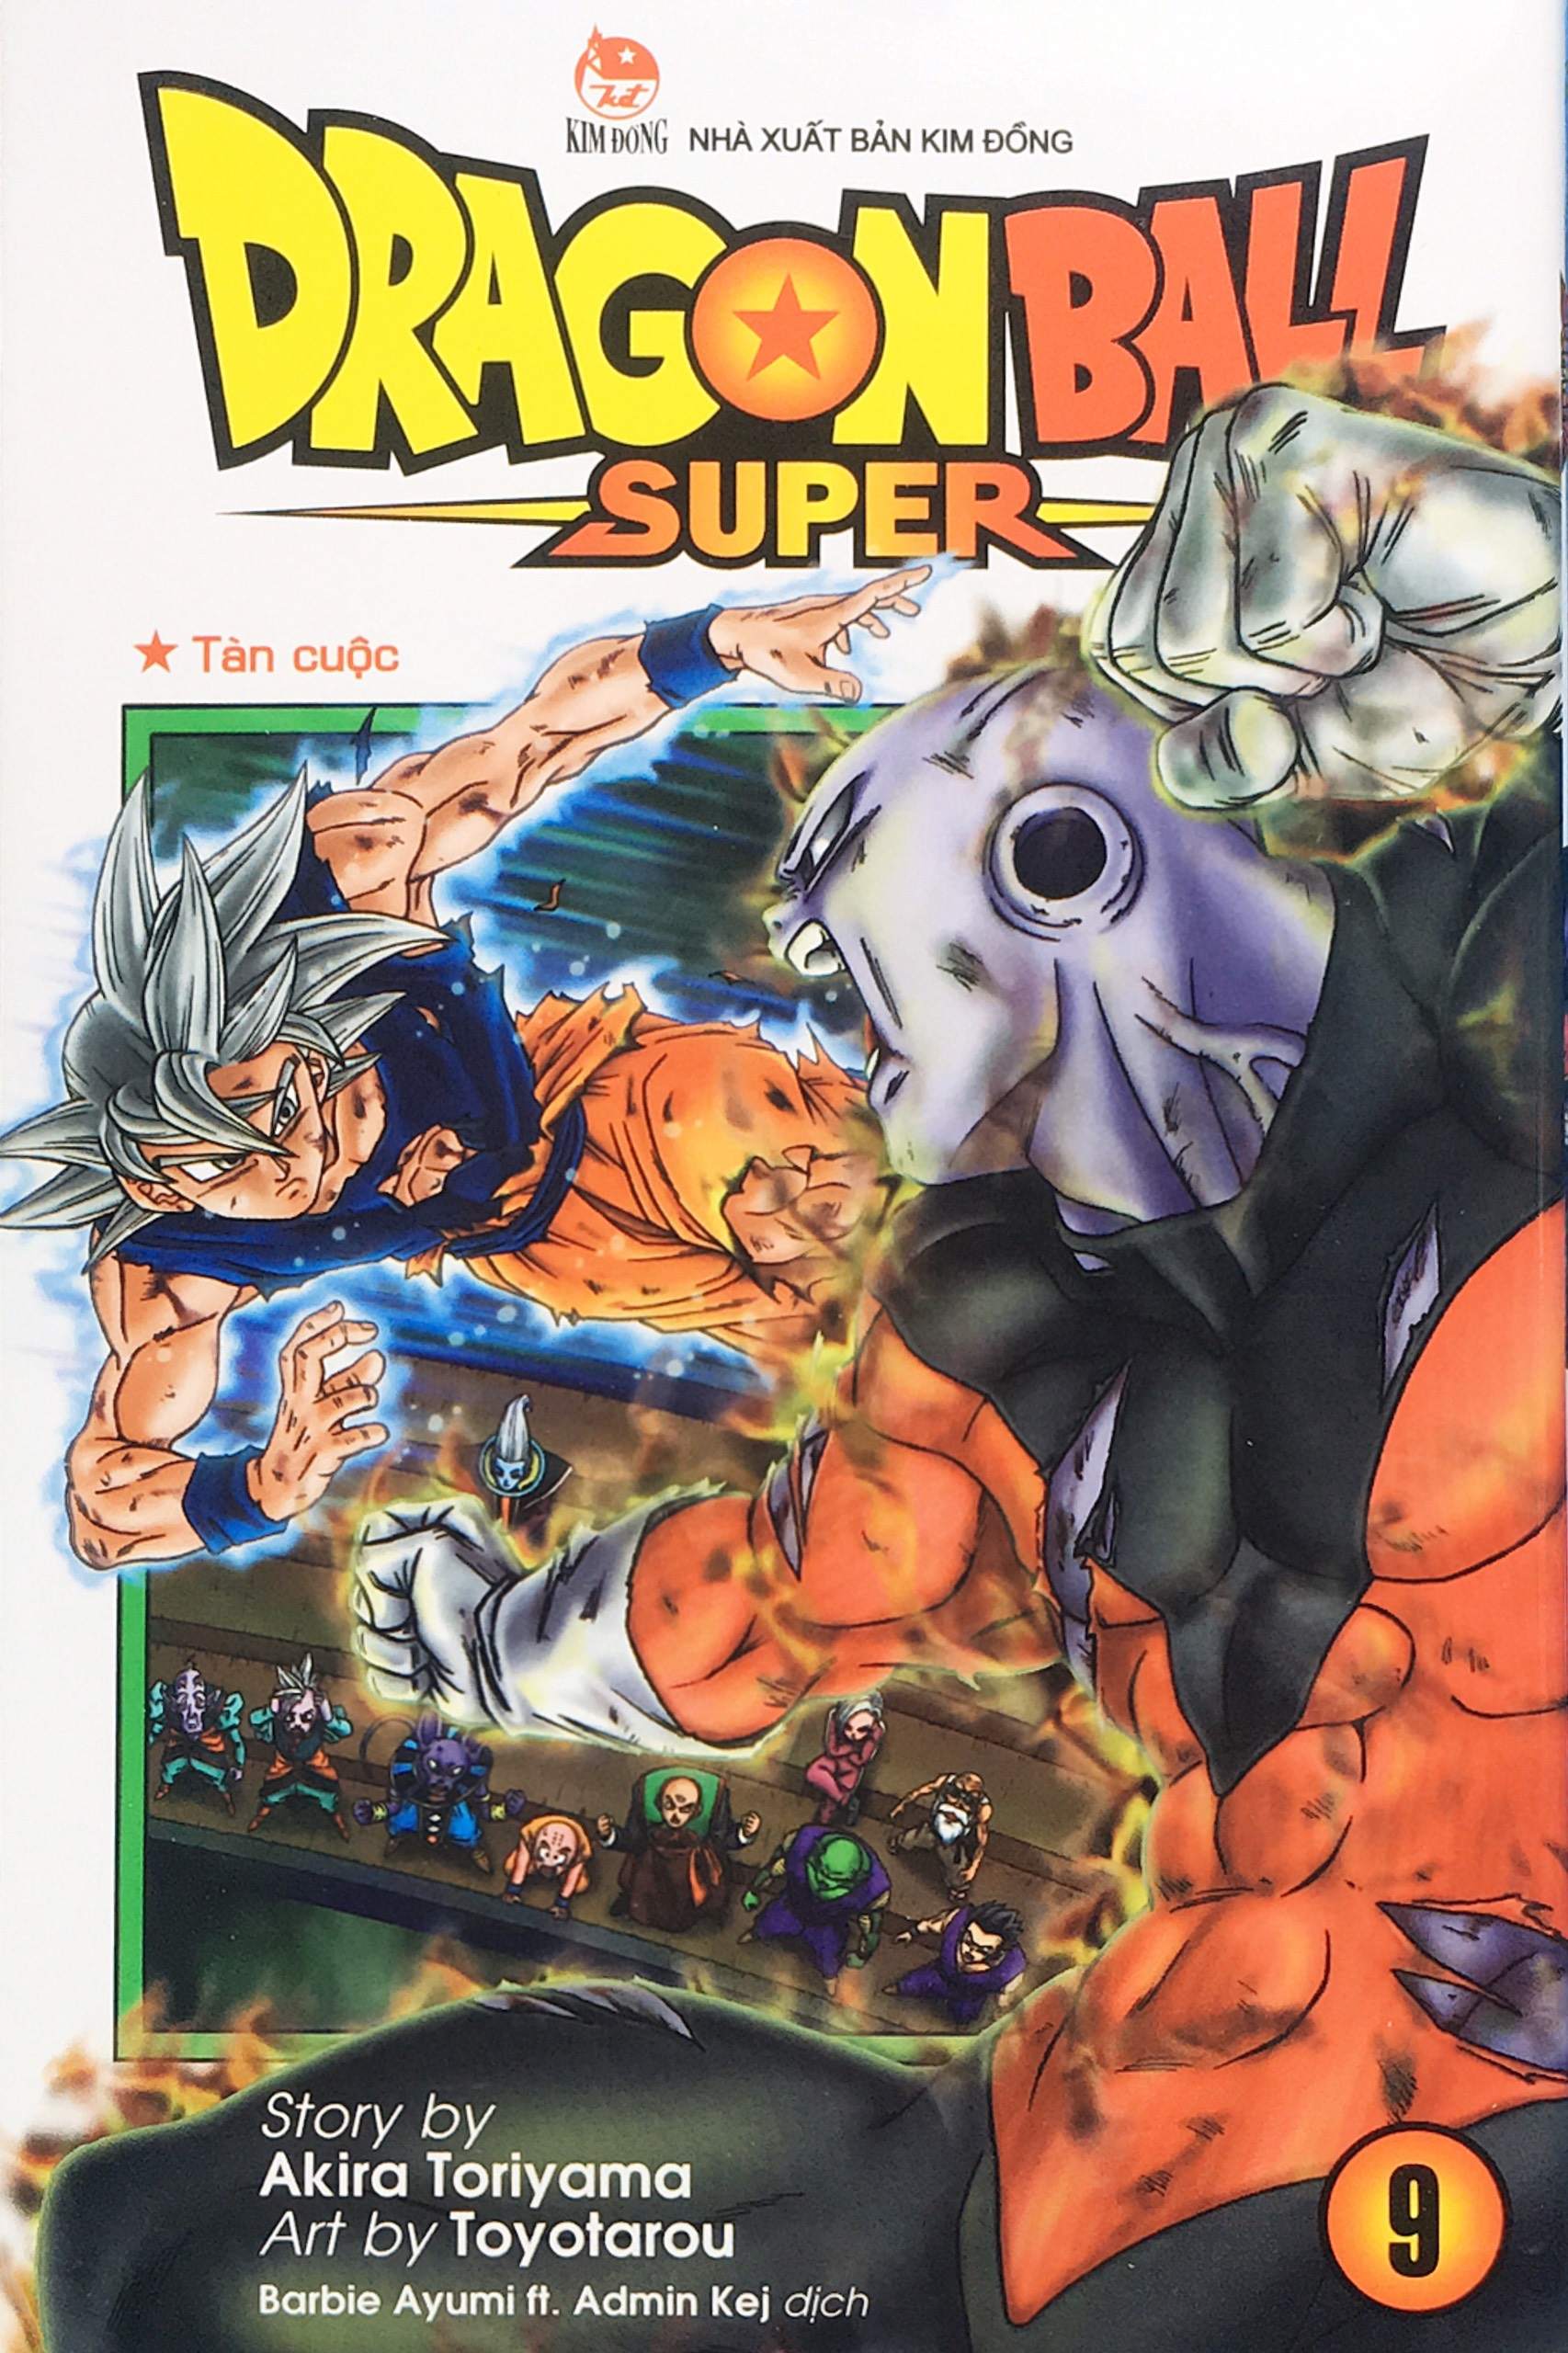 Dragon Ball Super -Trọn bộ 15 tập - (Từ tập 1 đến tập 15)